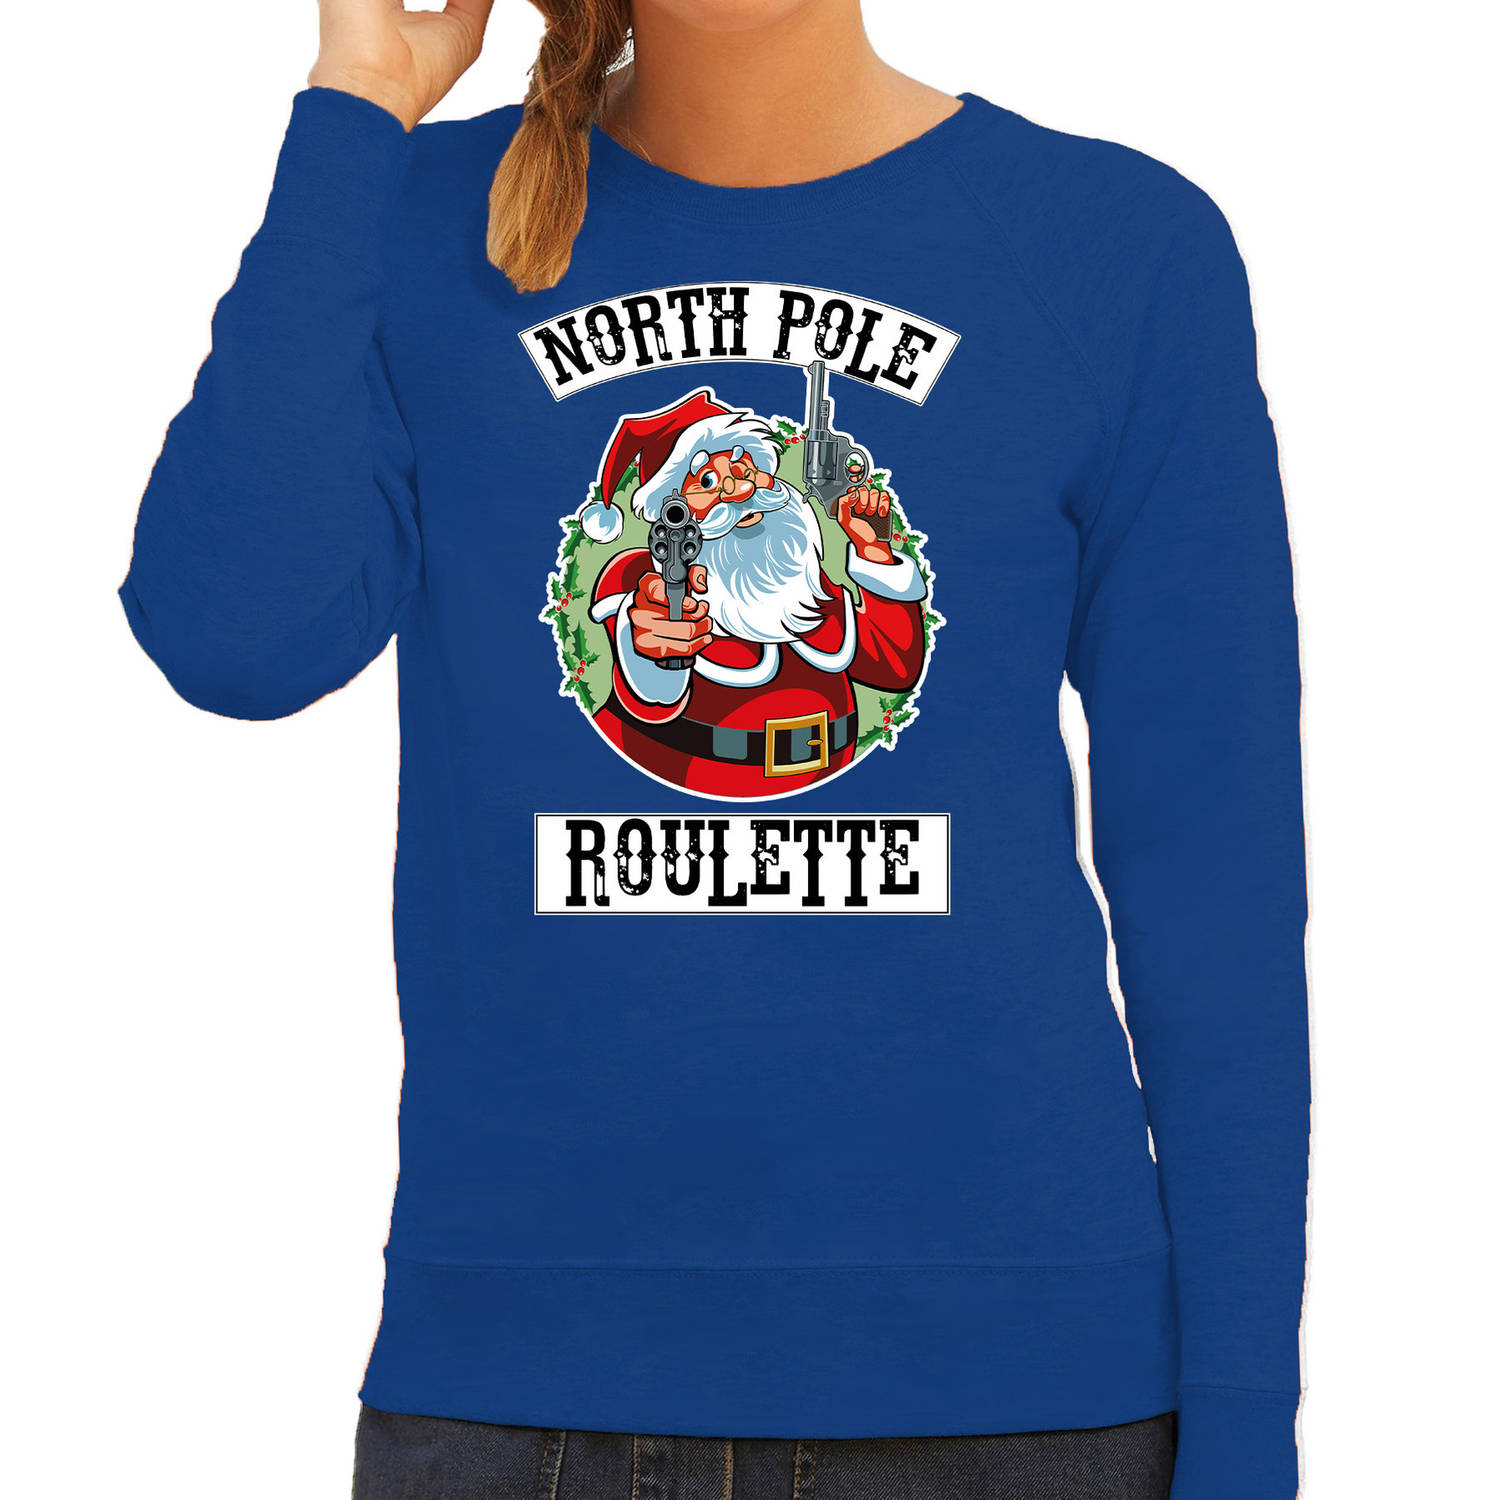 Blauwe Kersttrui / Kerstkleding Northpole roulette voor dames 2XL - kerst truien